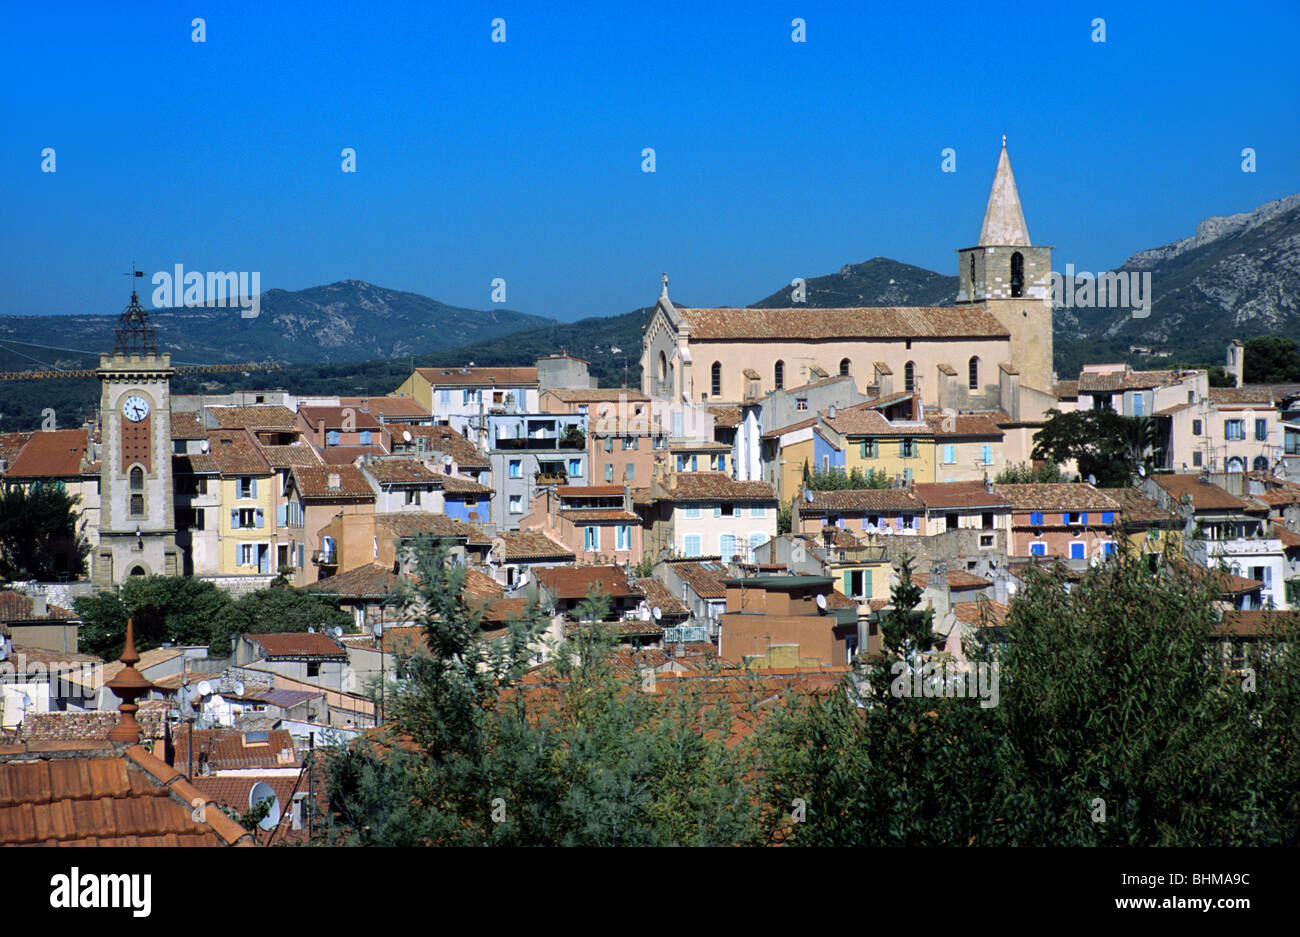 Altstadt, Stadtbild, Skyline & Kirche von Aubagne (Geburtsort von Marcel Pagnol), Bouches-du-Rhône, Provence, Frankreich Stockfoto